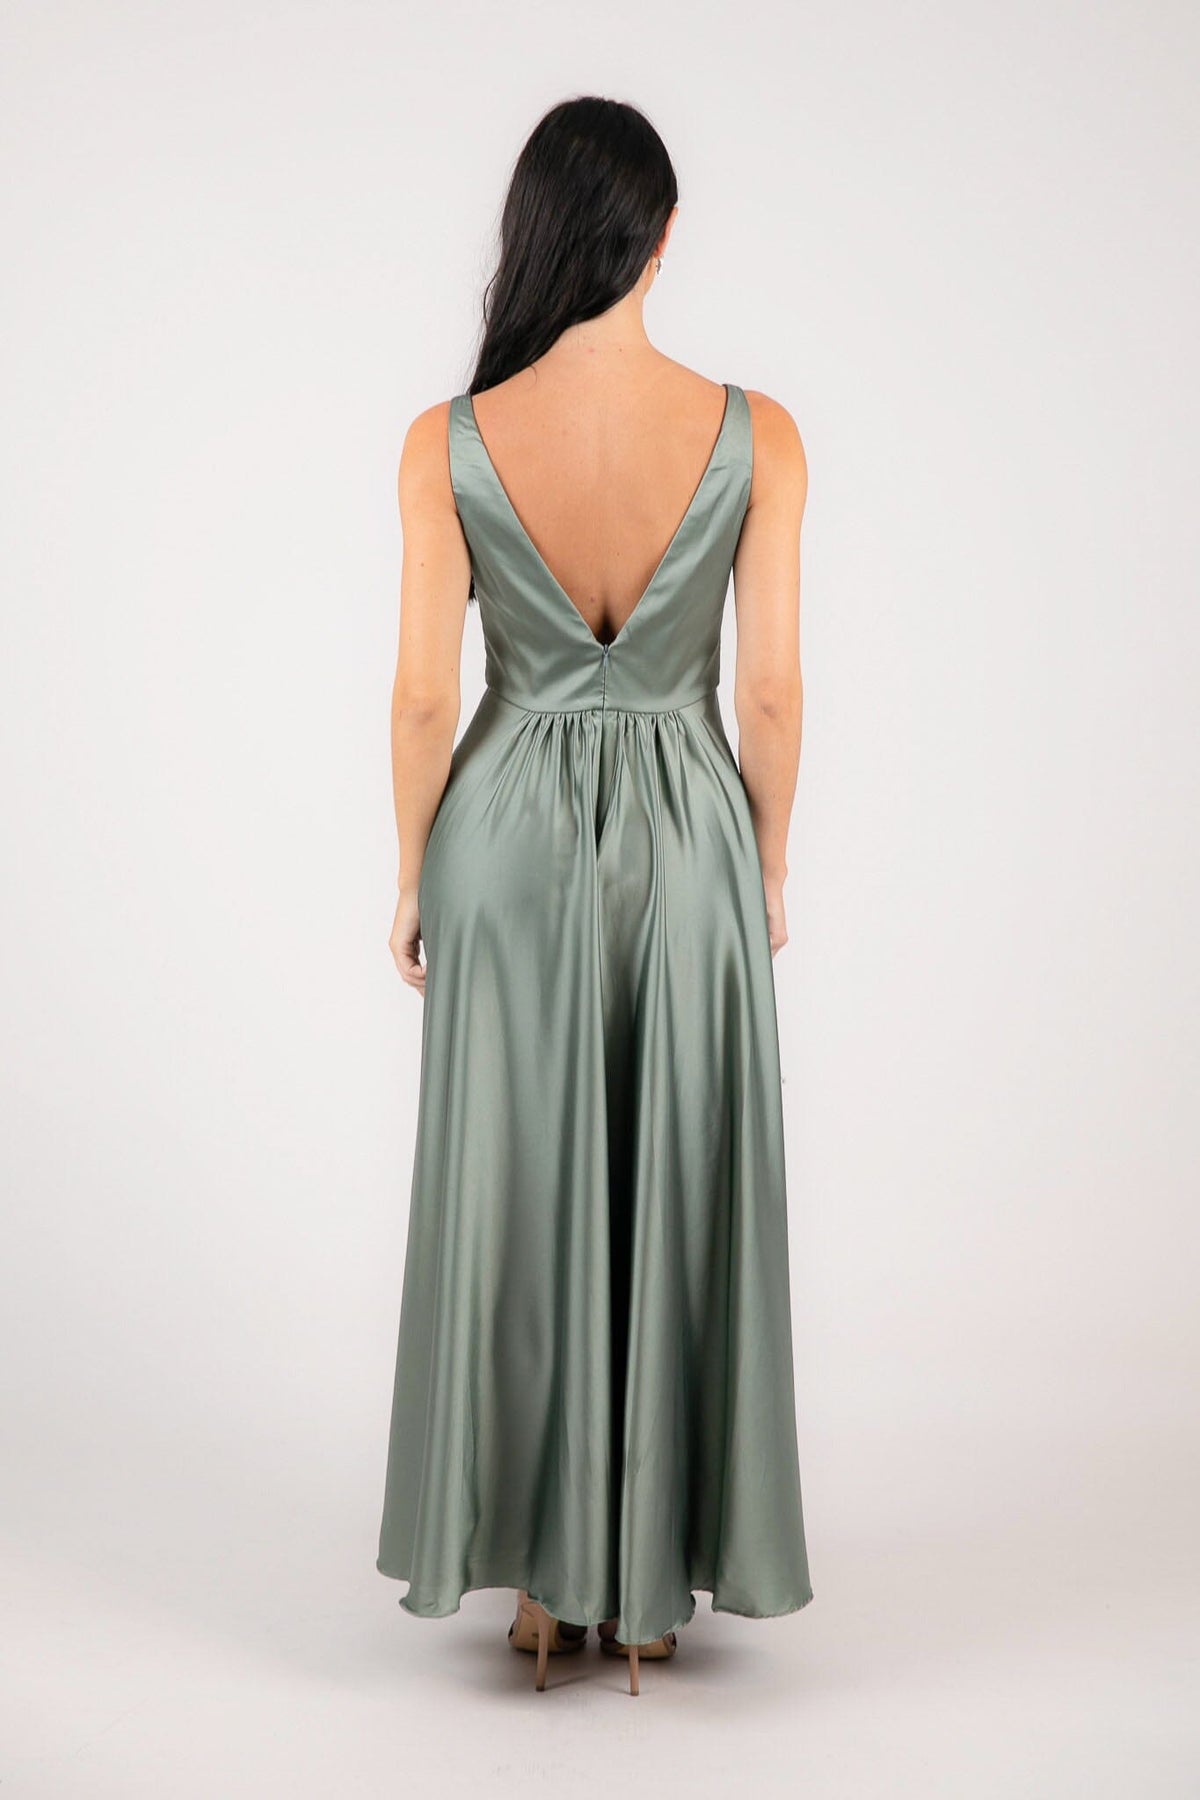 V Shaped Open Back Design of Sage Green Coloured Satin A-line Maxi Dress with V Neckline